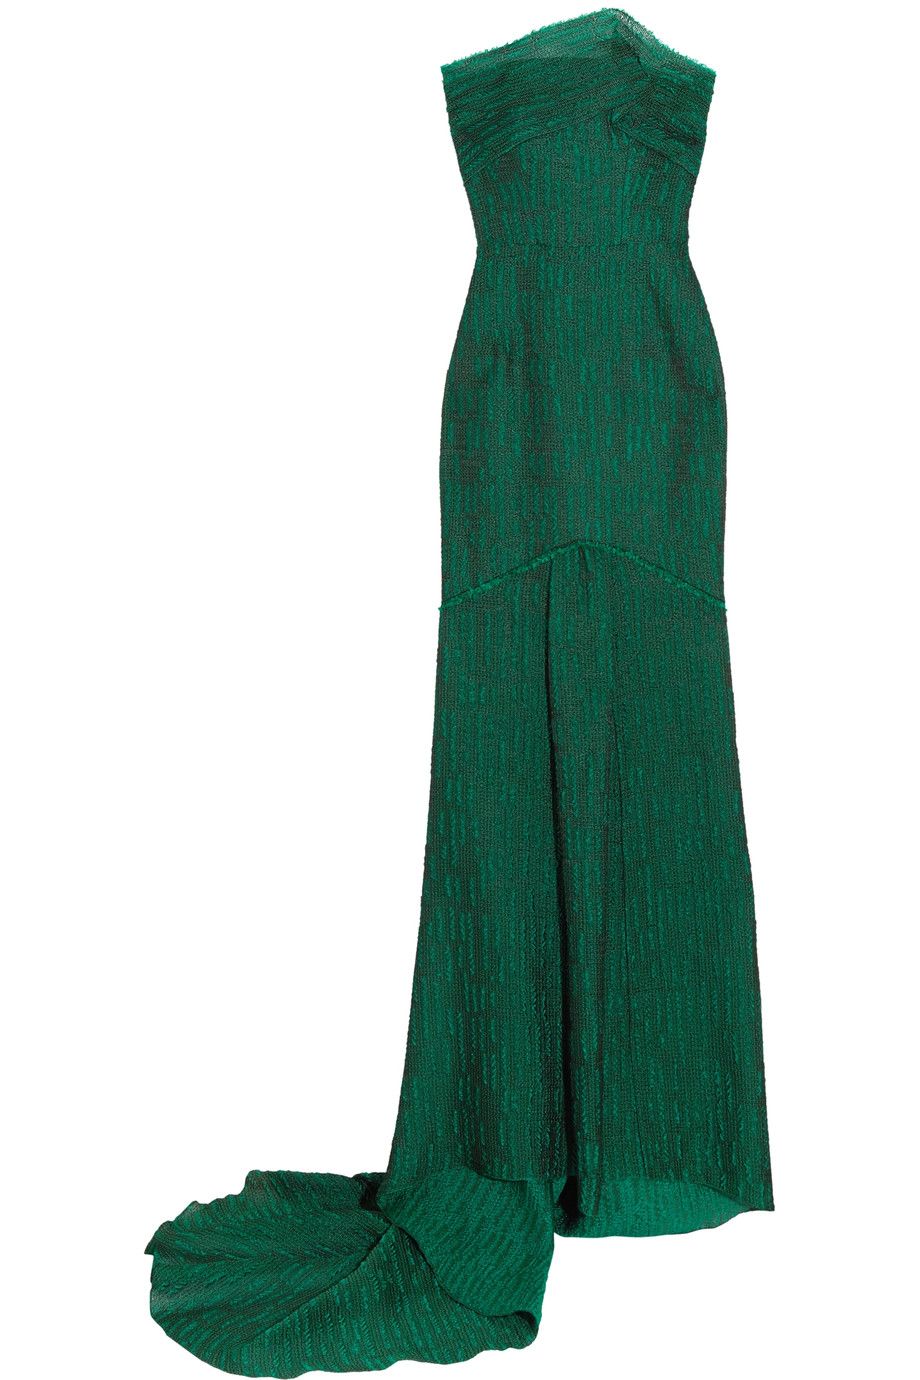 Abiti lunghi da cerimonia di sera eleganti come il vestito con corpetto verde di Roland Mouret